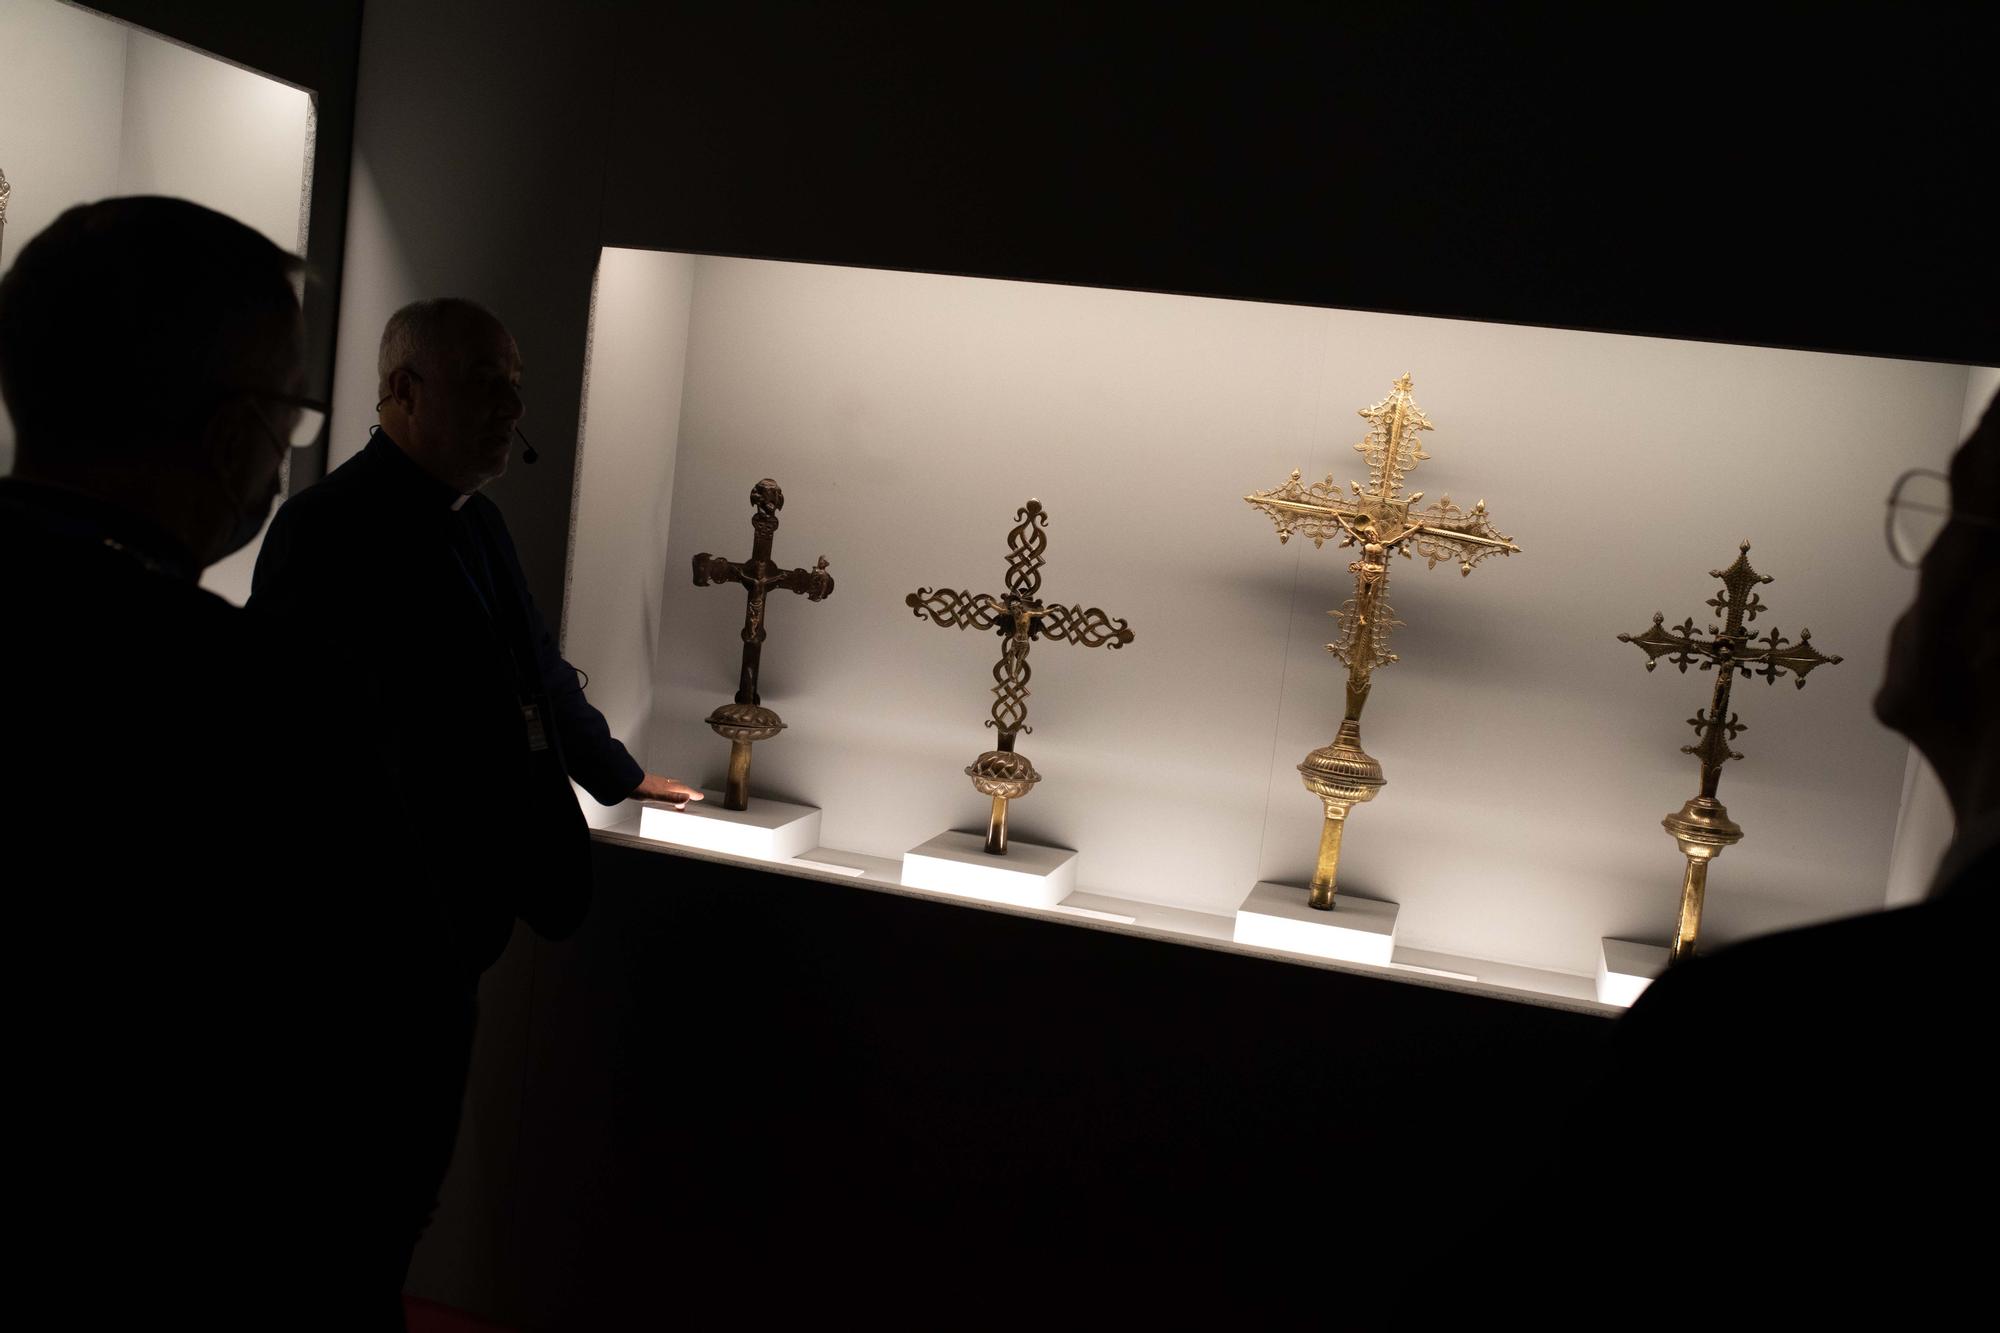 GALERÍA | Inauguración en Alcañices de la exposición "Salus, la Iglesia en Aliste y Alba"